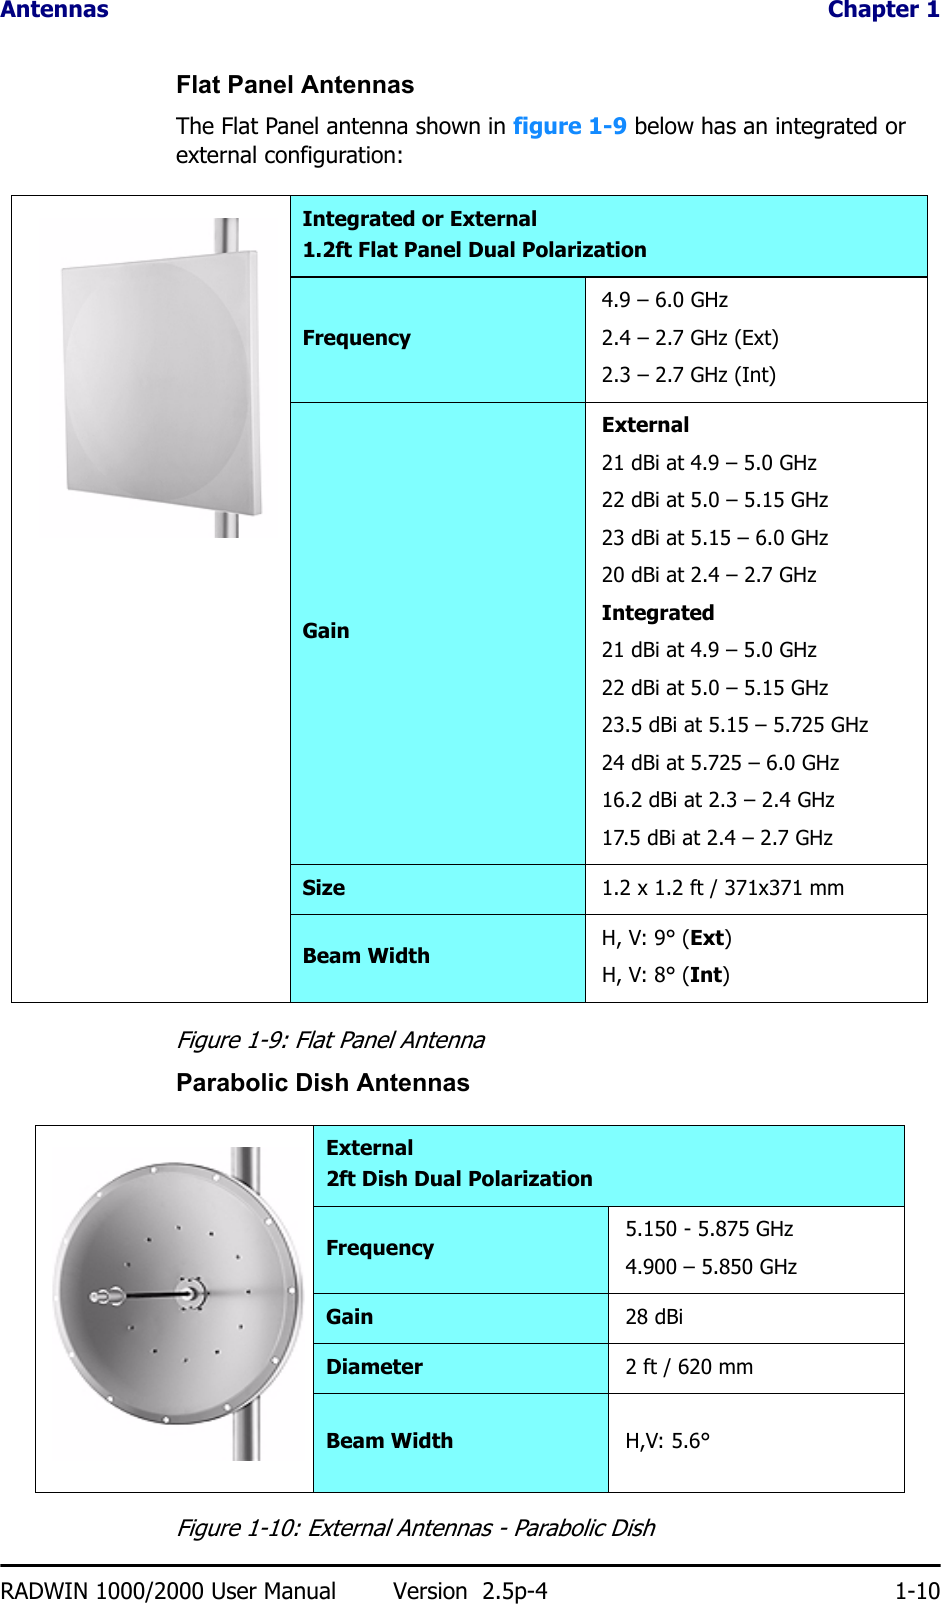 Antennas  Chapter 1RADWIN 1000/2000 User Manual Version  2.5p-4 1-10Flat Panel AntennasThe Flat Panel antenna shown in figure 1-9 below has an integrated or external configuration:Figure 1-9: Flat Panel AntennaParabolic Dish AntennasFigure 1-10: External Antennas - Parabolic DishIntegrated or External1.2ft Flat Panel Dual PolarizationFrequency4.9 – 6.0 GHz2.4 – 2.7 GHz (Ext)2.3 – 2.7 GHz (Int)GainExternal21 dBi at 4.9 – 5.0 GHz 22 dBi at 5.0 – 5.15 GHz 23 dBi at 5.15 – 6.0 GHz20 dBi at 2.4 – 2.7 GHzIntegrated21 dBi at 4.9 – 5.0 GHz 22 dBi at 5.0 – 5.15 GHz 23.5 dBi at 5.15 – 5.725 GHz24 dBi at 5.725 – 6.0 GHz16.2 dBi at 2.3 – 2.4 GHz17.5 dBi at 2.4 – 2.7 GHzSize 1.2 x 1.2 ft / 371x371 mmBeam Width H, V: 9° (Ext)H, V: 8° (Int)External2ft Dish Dual PolarizationFrequency 5.150 - 5.875 GHz4.900 – 5.850 GHzGain 28 dBiDiameter 2 ft / 620 mmBeam Width H,V: 5.6°